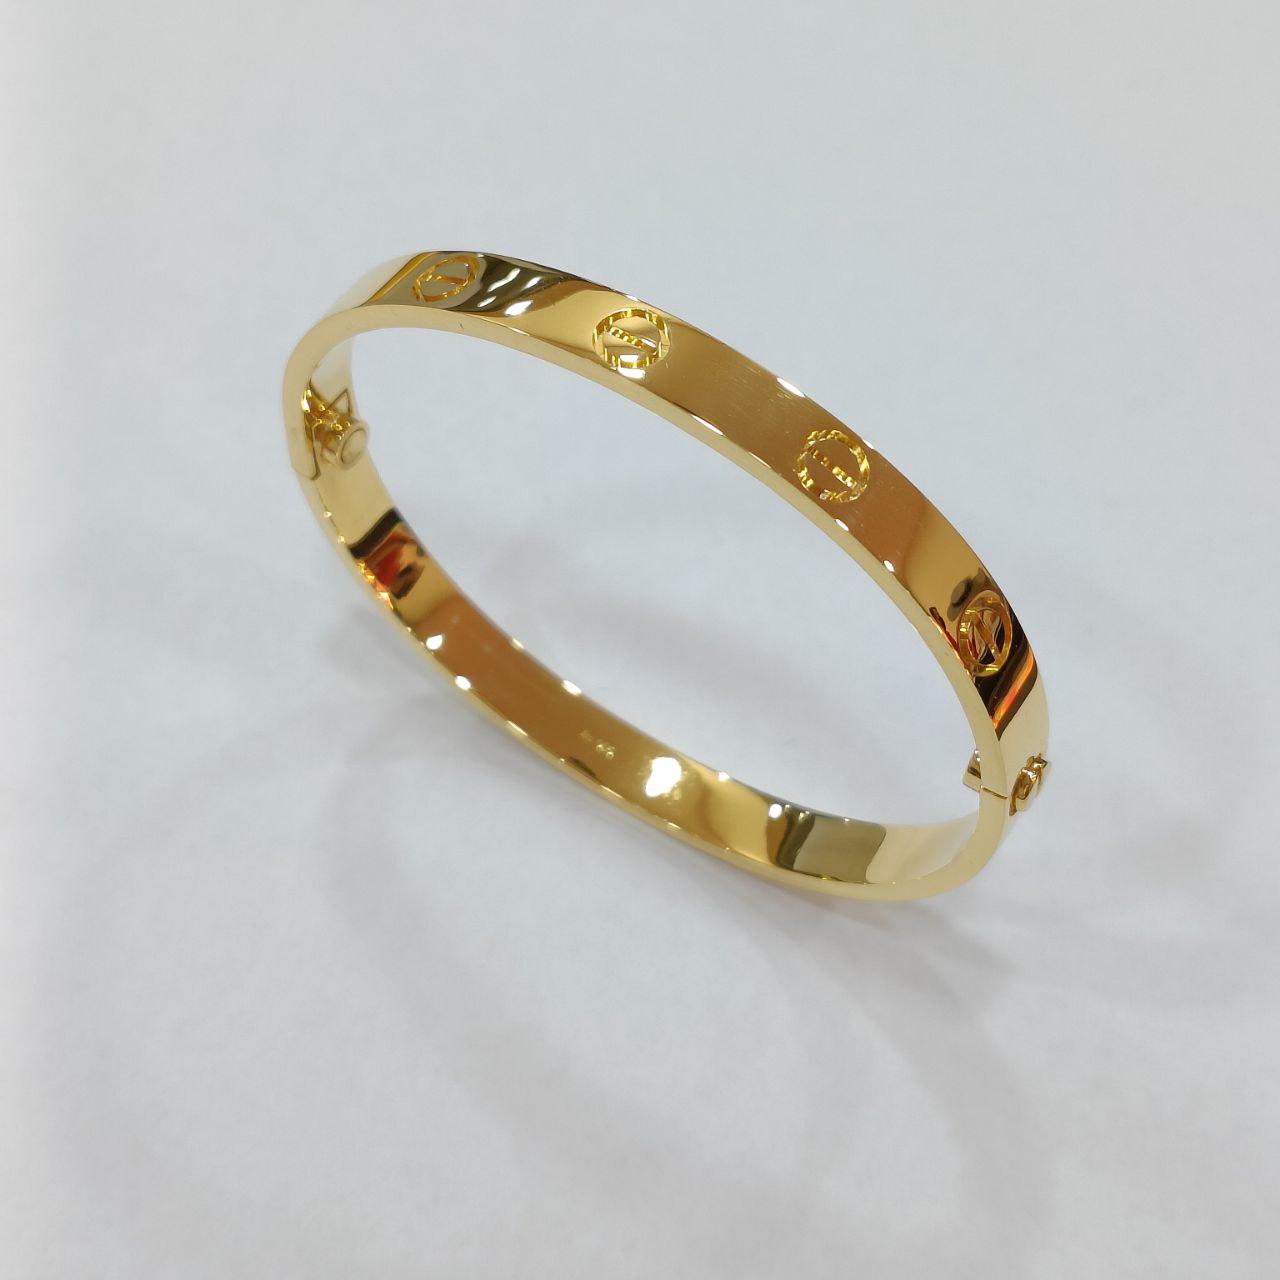 22k / 916 Gold C Design Screw Bangle-916 gold-Best Gold Shop